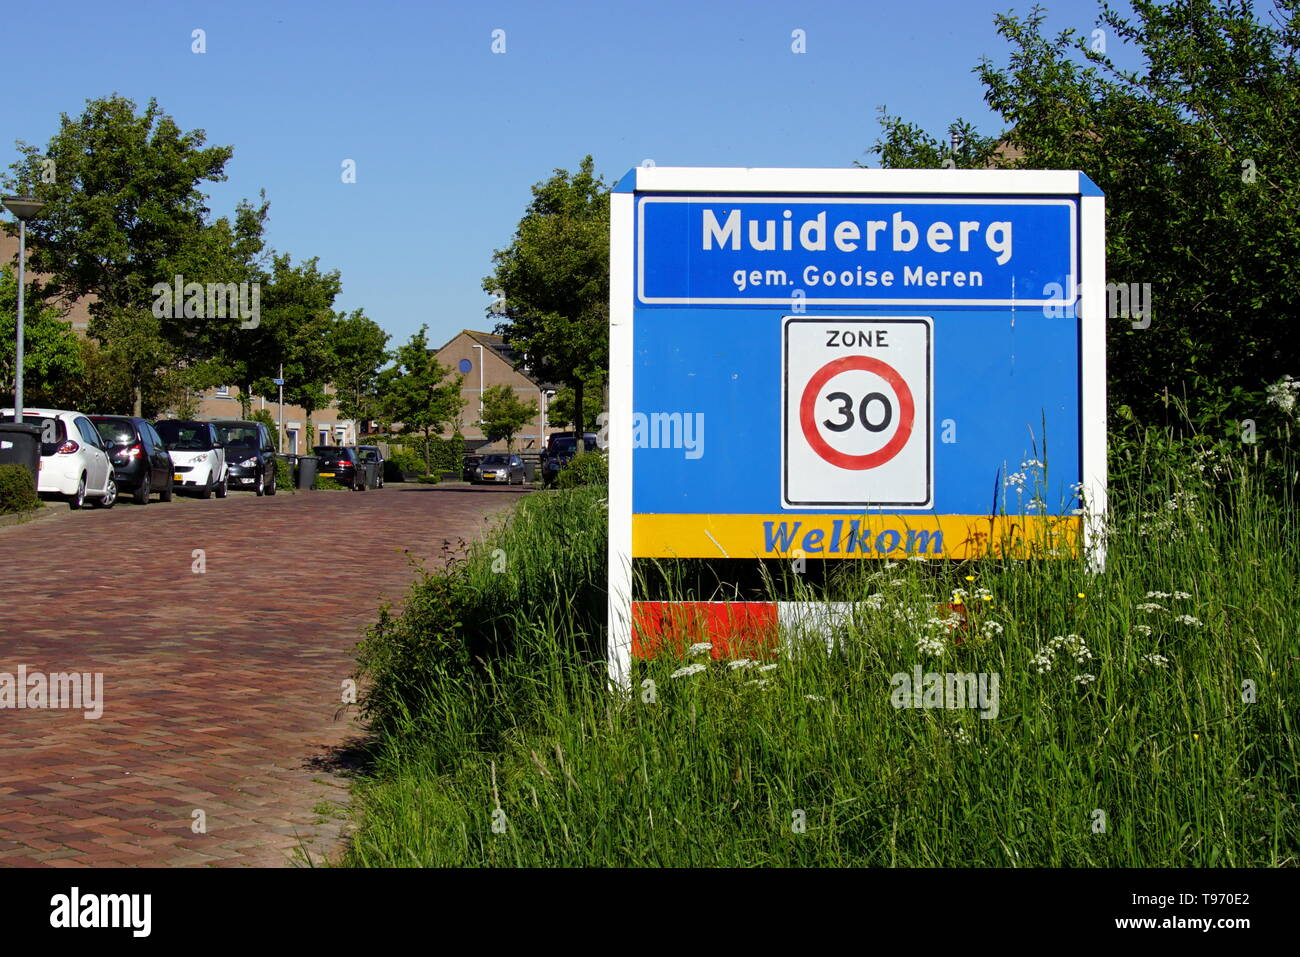 Muiderberg, Noord Holland, Pays-Bas - 7 mai 2018 : entrée de la ville de Muiderberg, ville néerlandaise d'Amsterdam-Bussum Meren. Banque D'Images